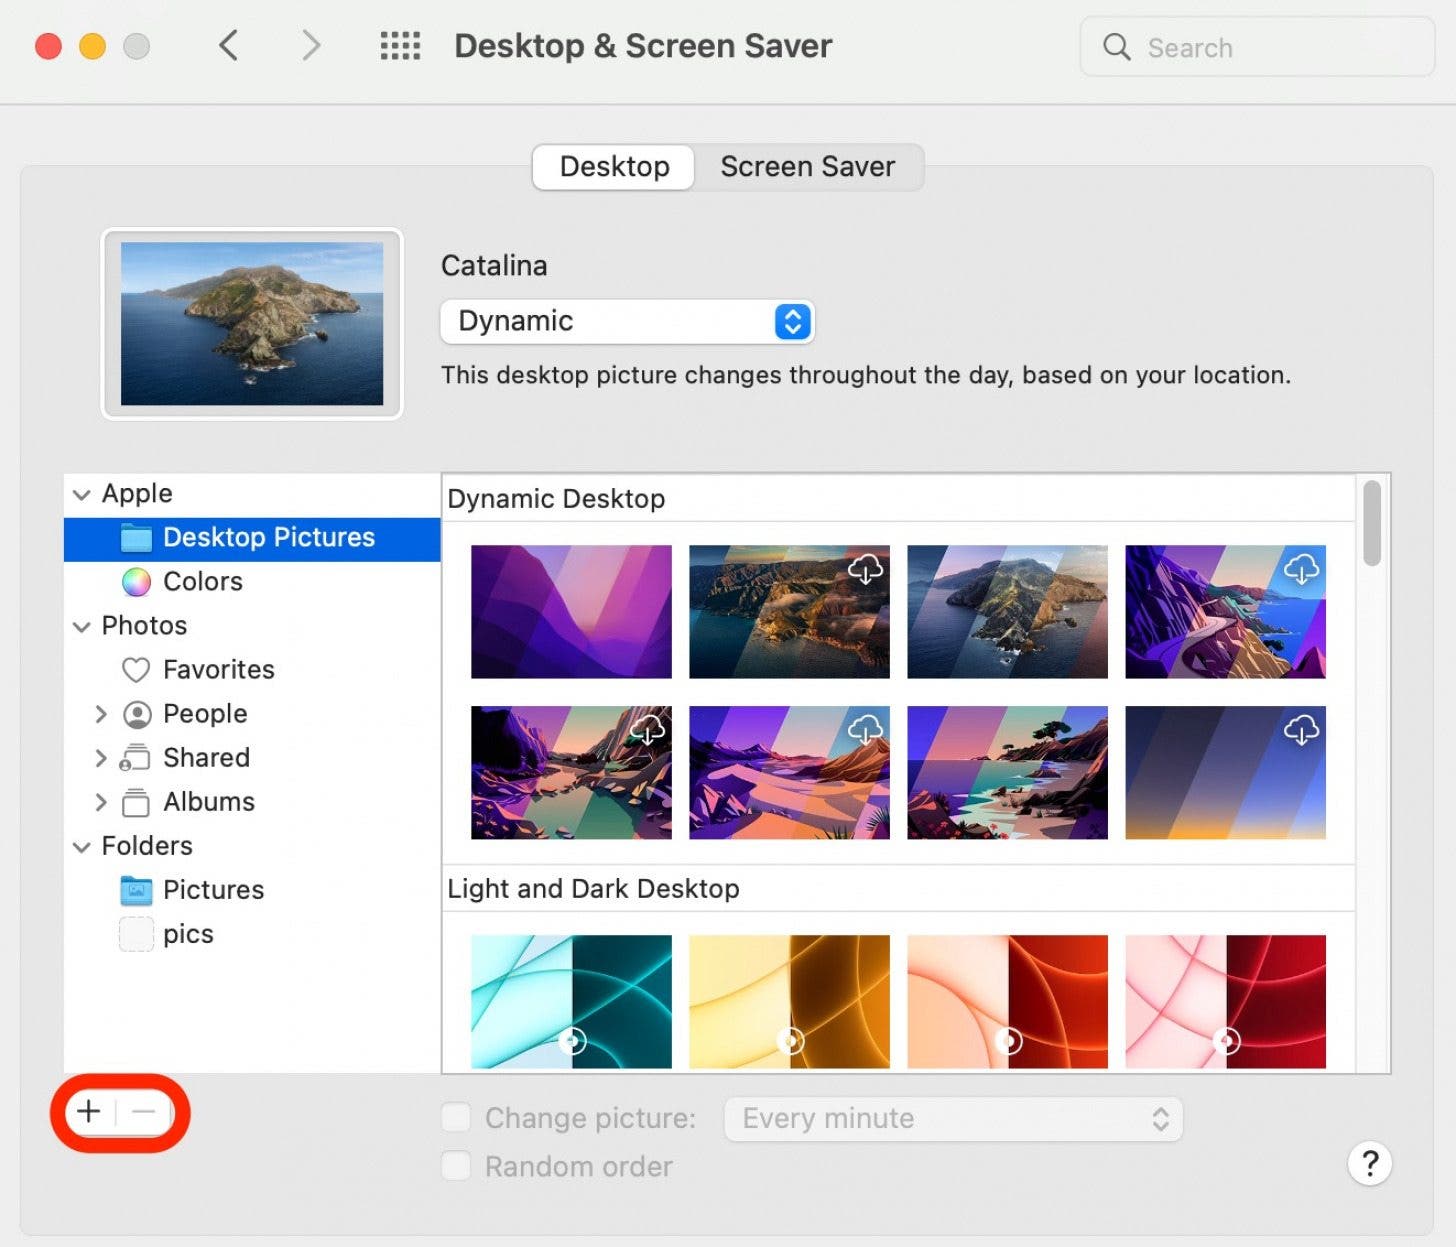 Desktop-Hintergrund ändern Schritt 9 - Klicken Sie auf +